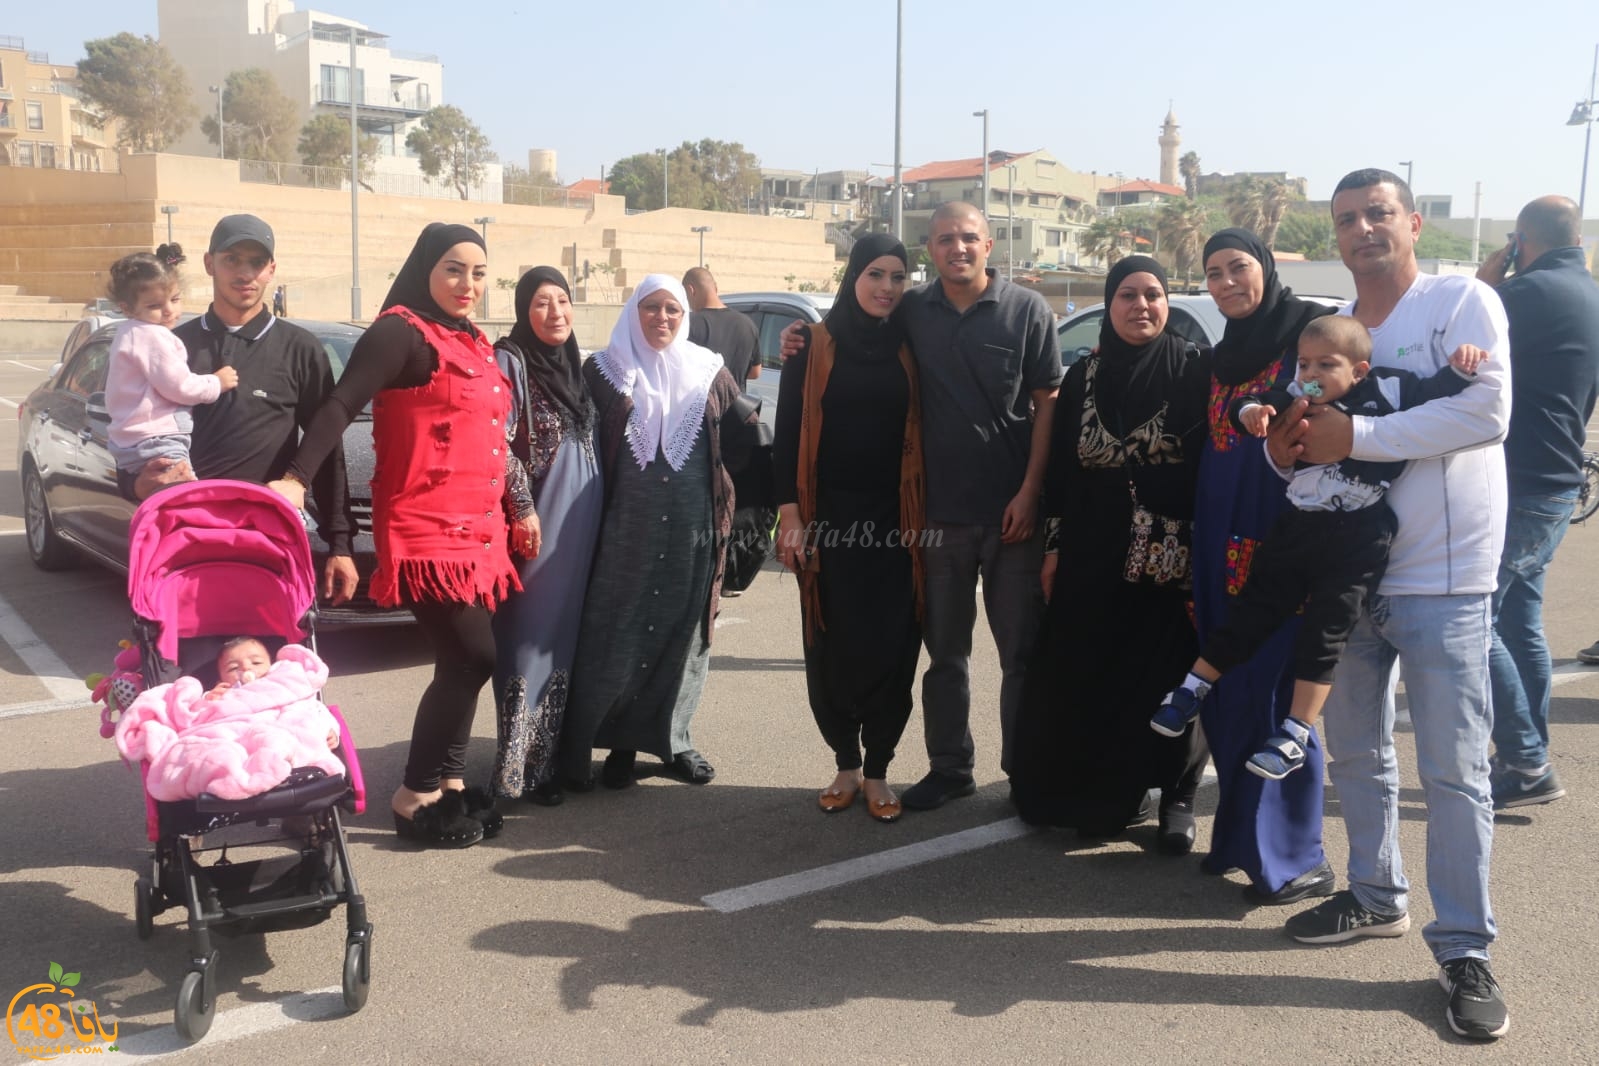 بالصور: انطلاق الفوج الثاني من معتمري مدينة يافا إلى الديار الحجازية لأداء عمرة الربيع 